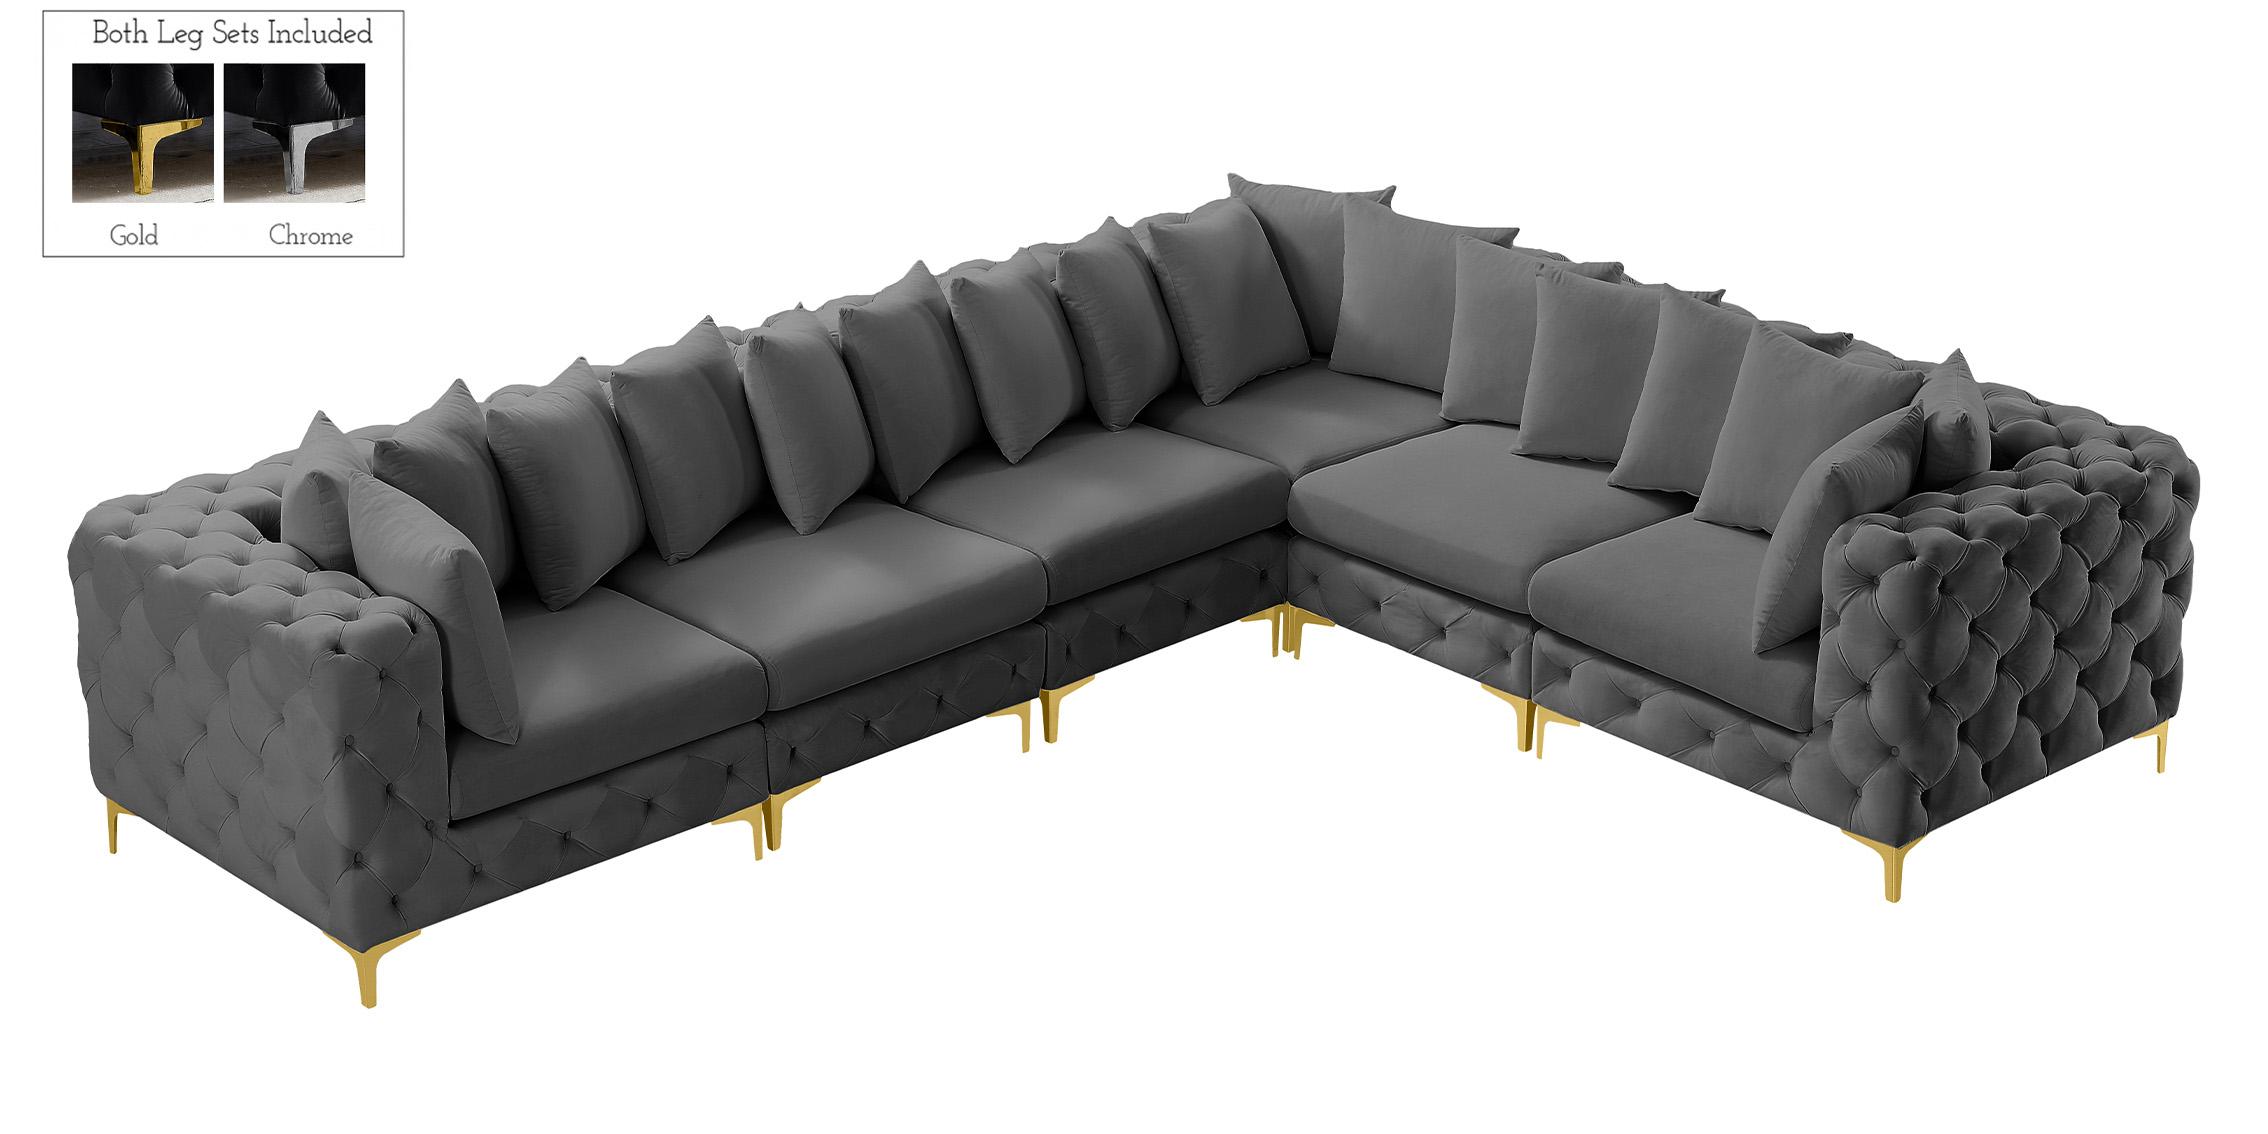 

    
686Grey-Sec6A Meridian Furniture Modular Sectional Sofa
